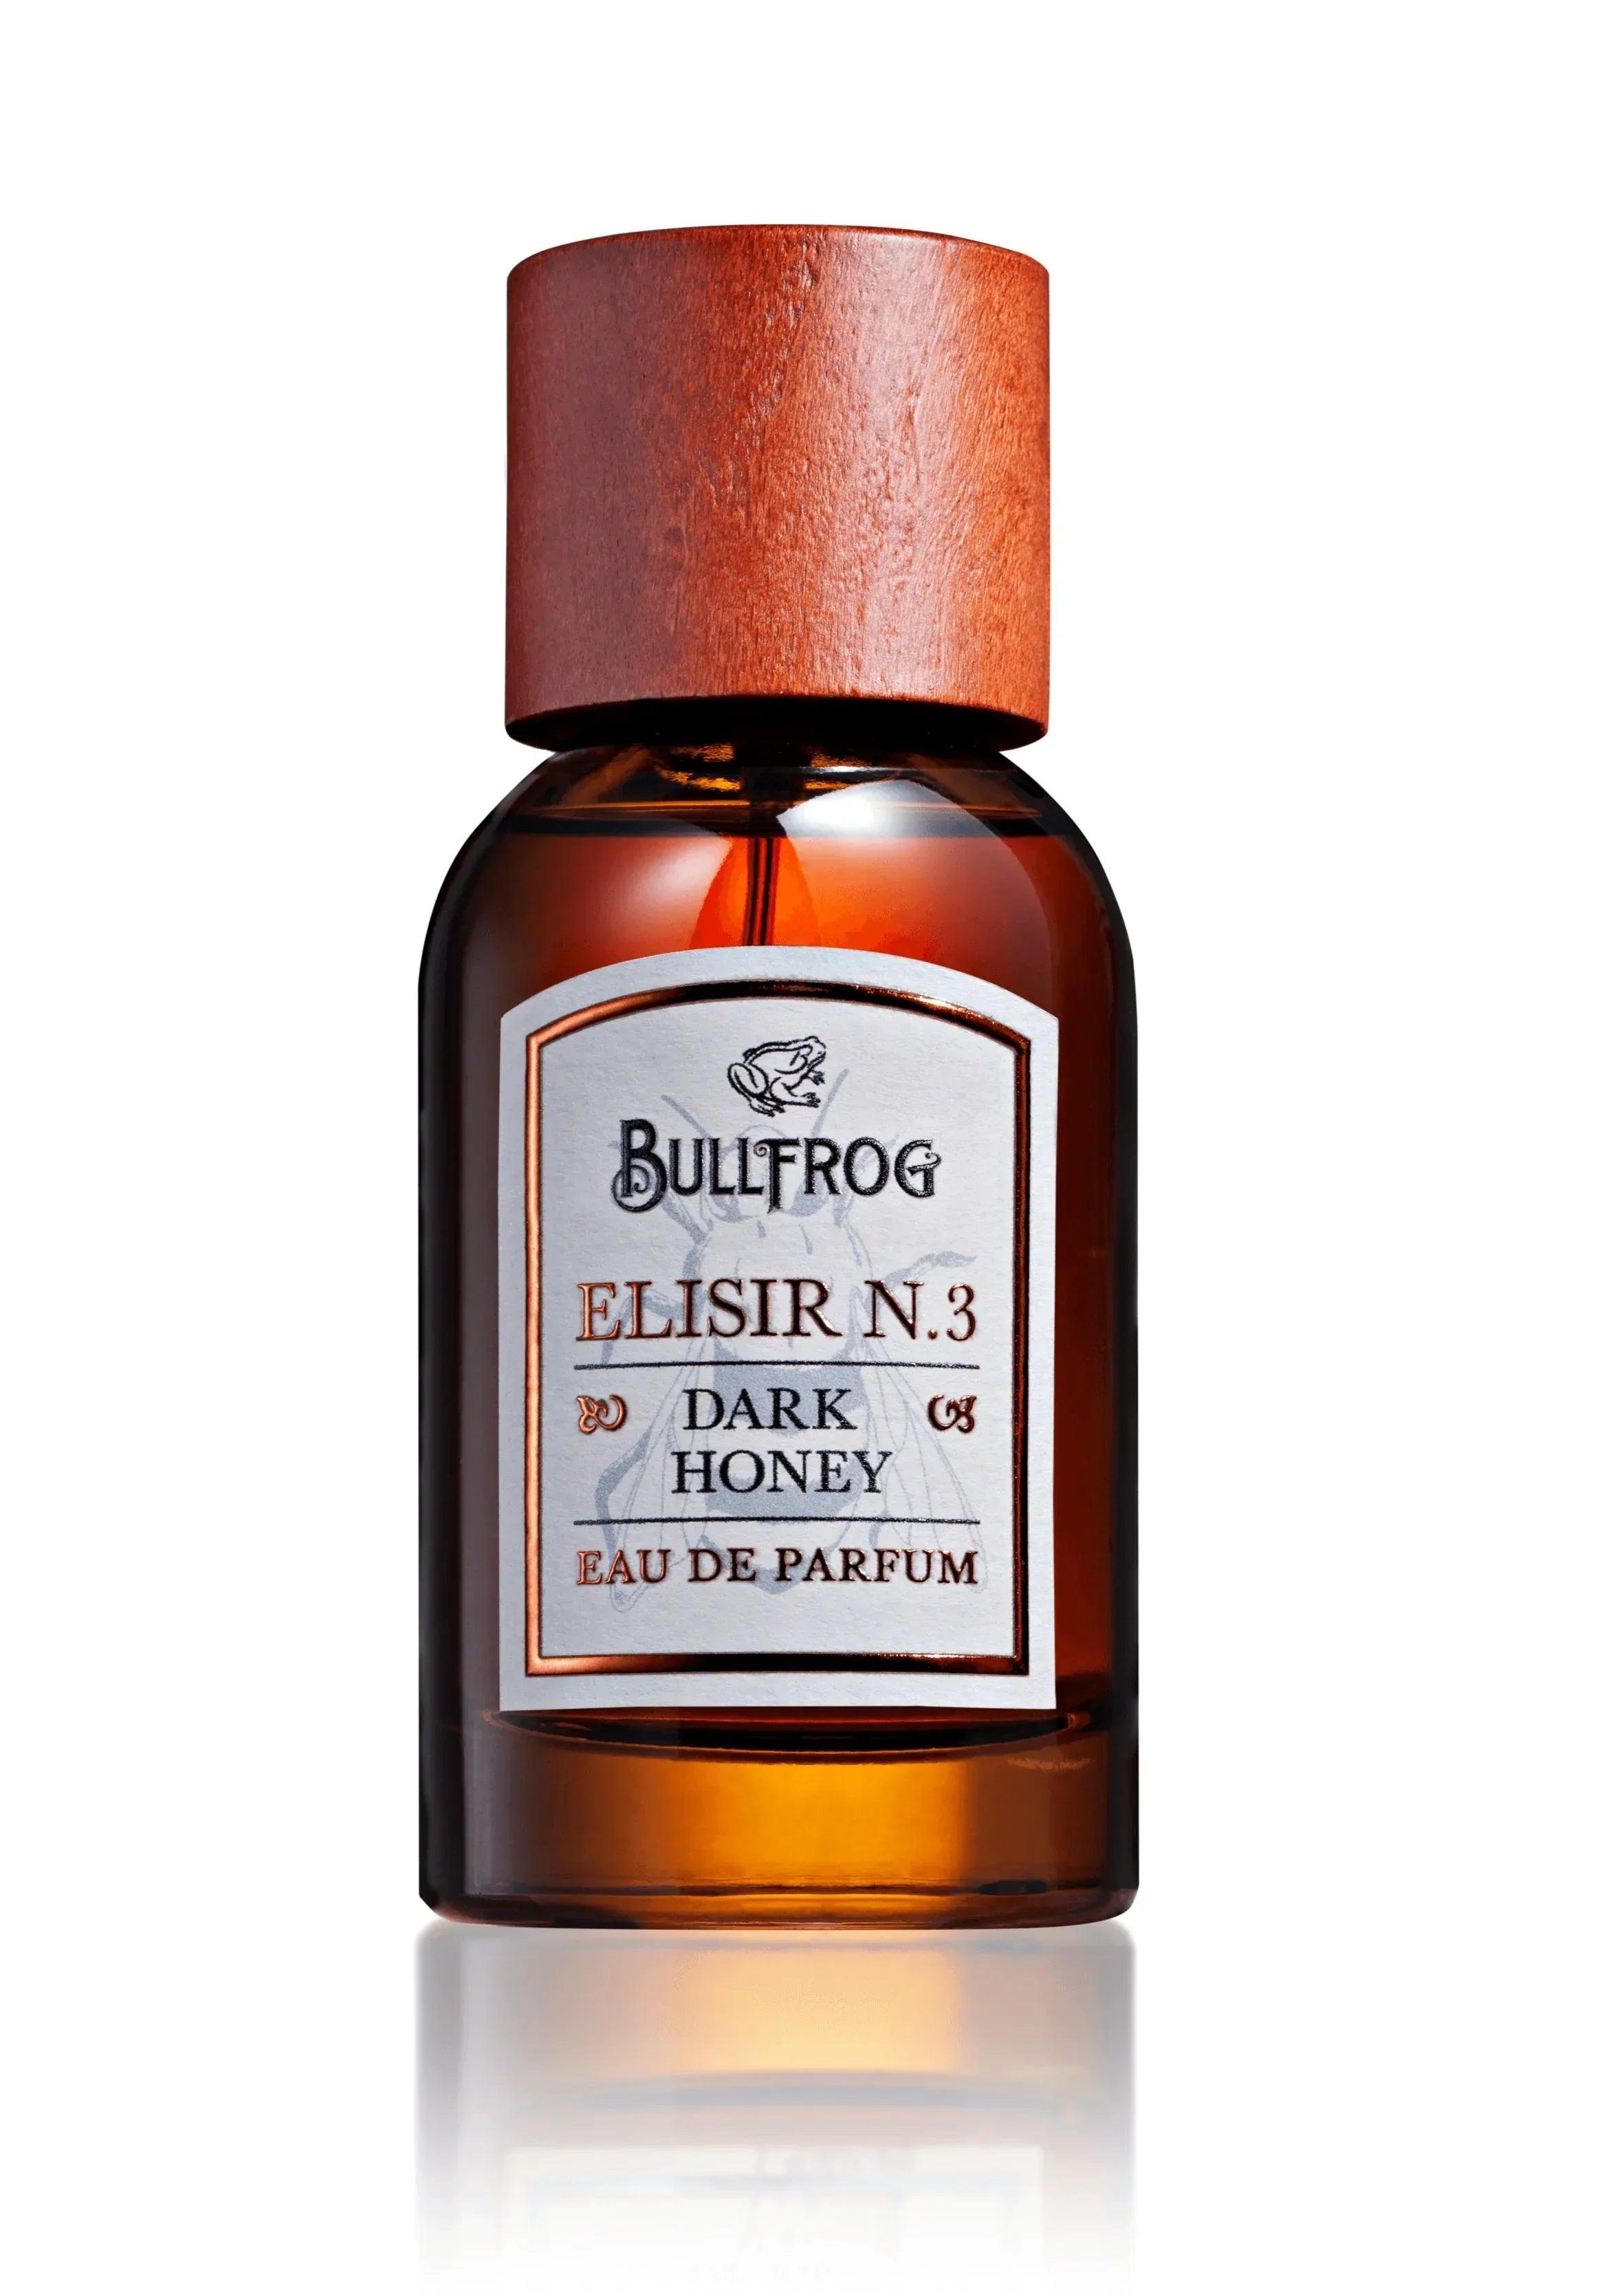 Bullfrog Elisir N.3 Dark Honey - Eau de Parfum | Parfyme | Bullfrog | JK SHOP | JK Barber og herre frisør | Lavepriser | Best